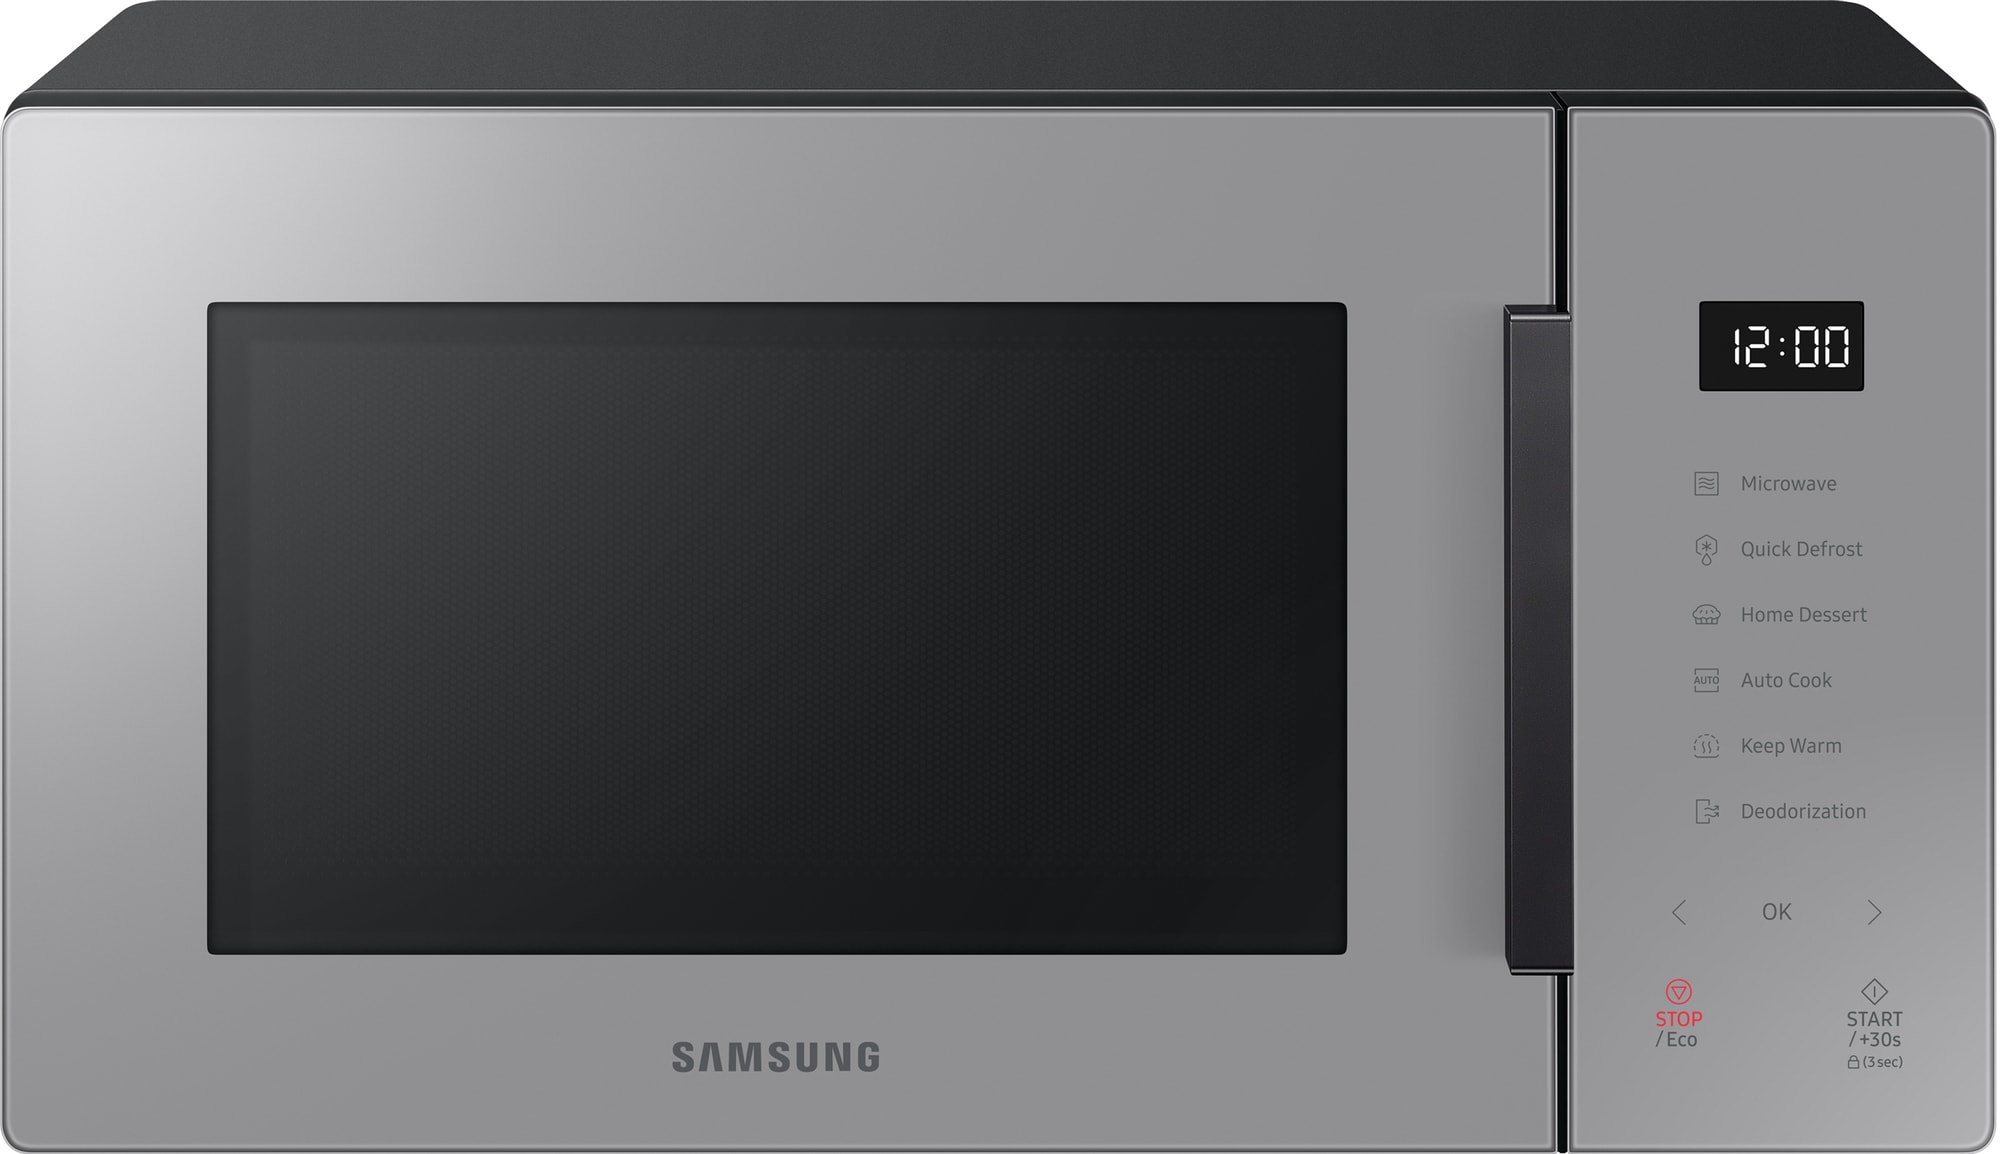 Samsung Bespoke mikroaaltouuni MS23T5018AG (puhdas harmaa) - Gigantti  verkkokauppa